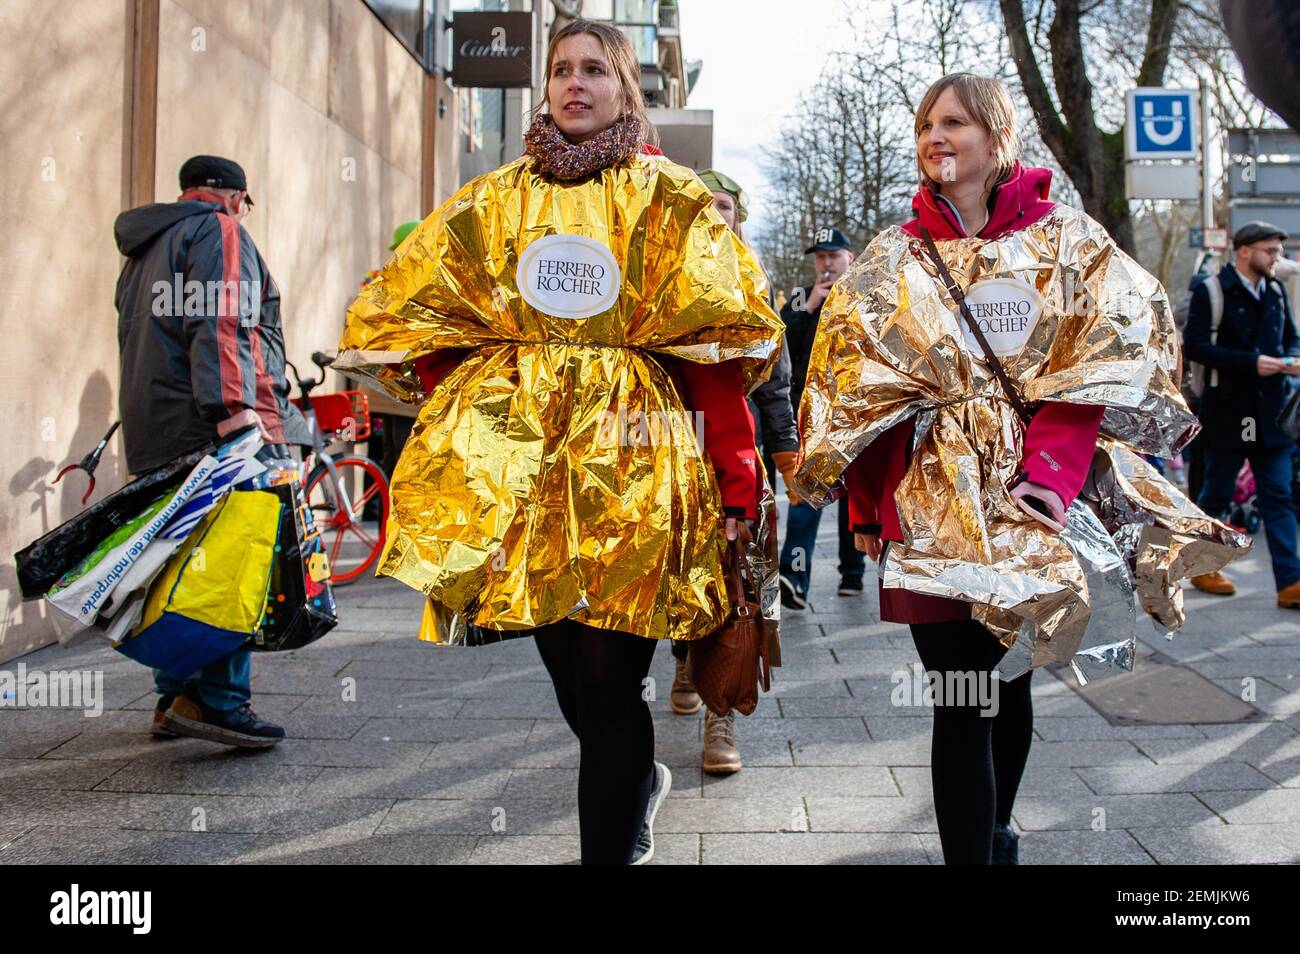 Dos mujeres son vistas usando un traje de Ferrero Roche durante el desfile.  En Düsseldorf, el calendario de eventos de Carnaval incluye no menos de 300  espectáculos de Carnaval, bailes, aniversarios, recepciones